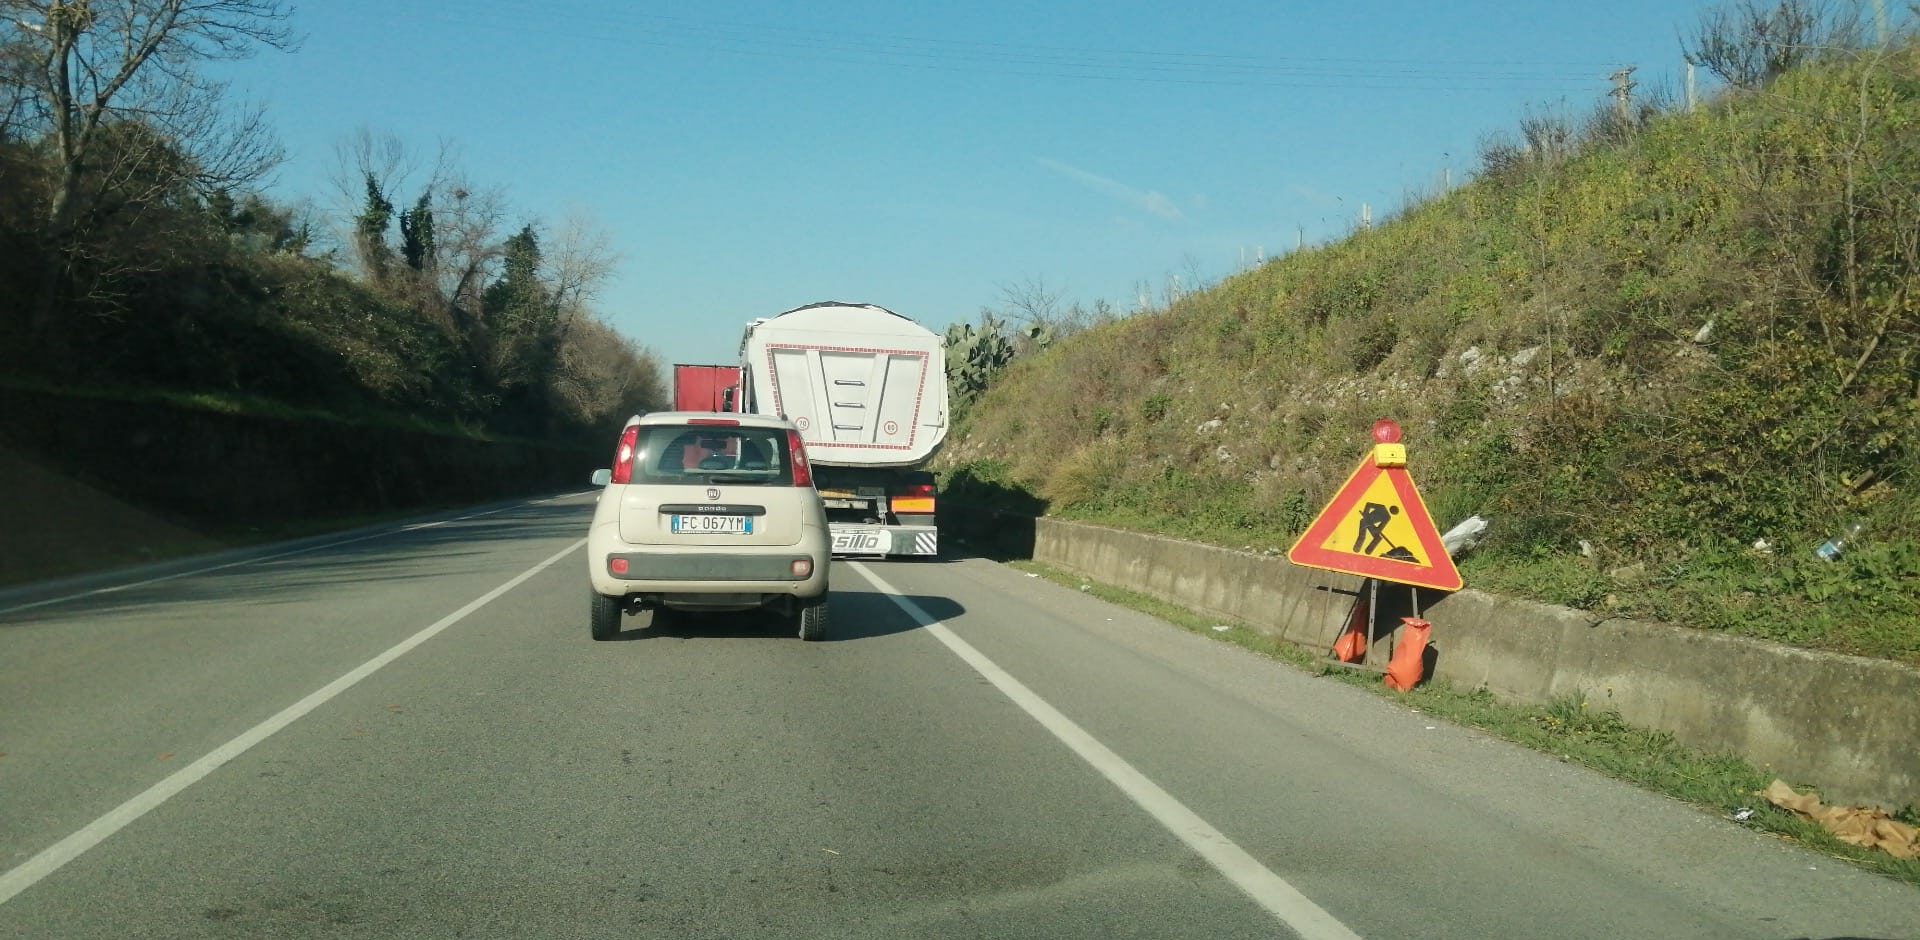 Provincia Benevento: approvati provvedimenti per lavori su opere stradali